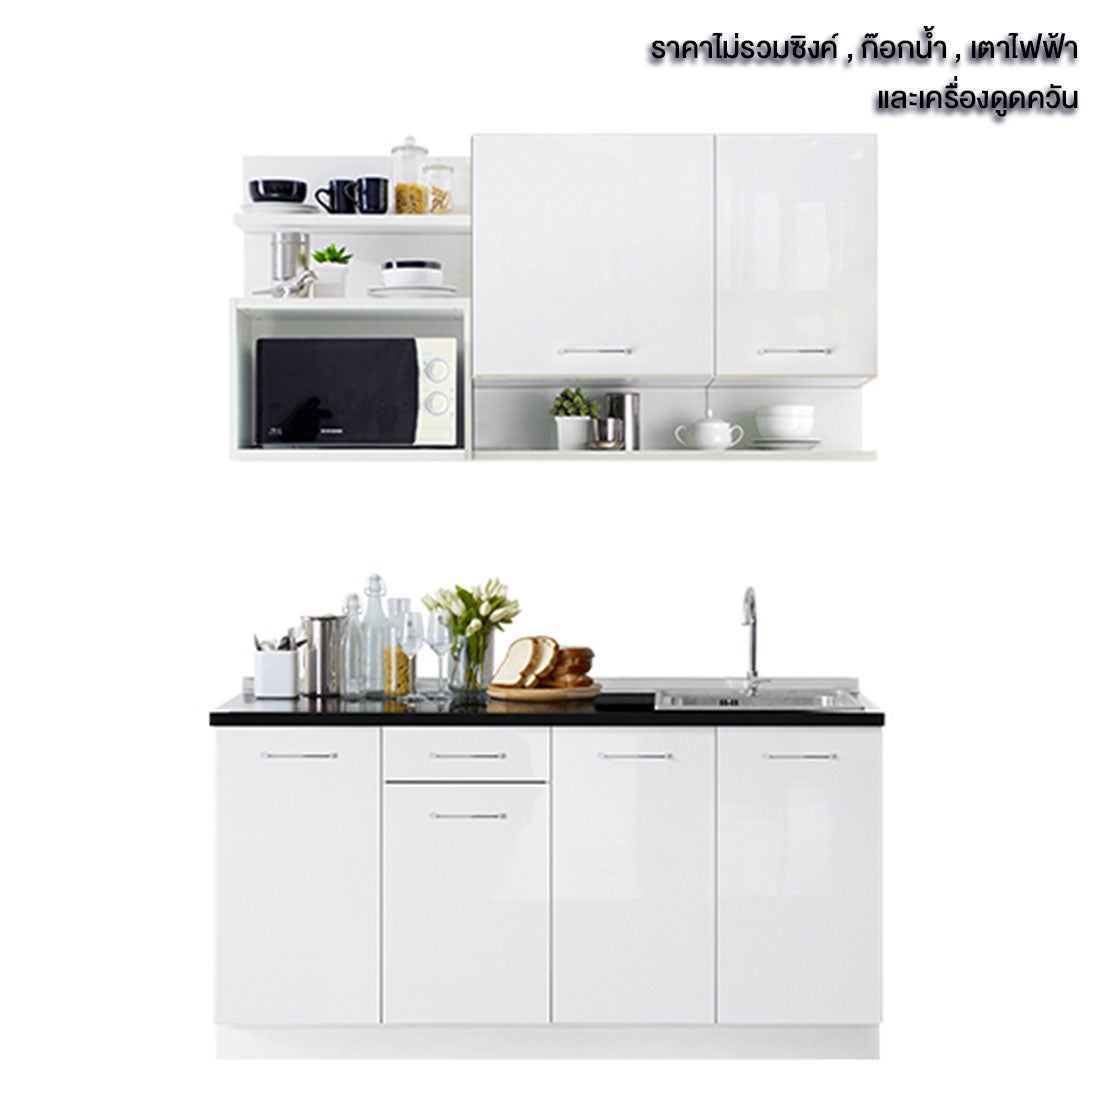 ห้องครัวขนาดกะทัดรัดและครัวสำเร็จรูป ขนาด 160 ซม. รุ่น Kourmet สีขาว 02